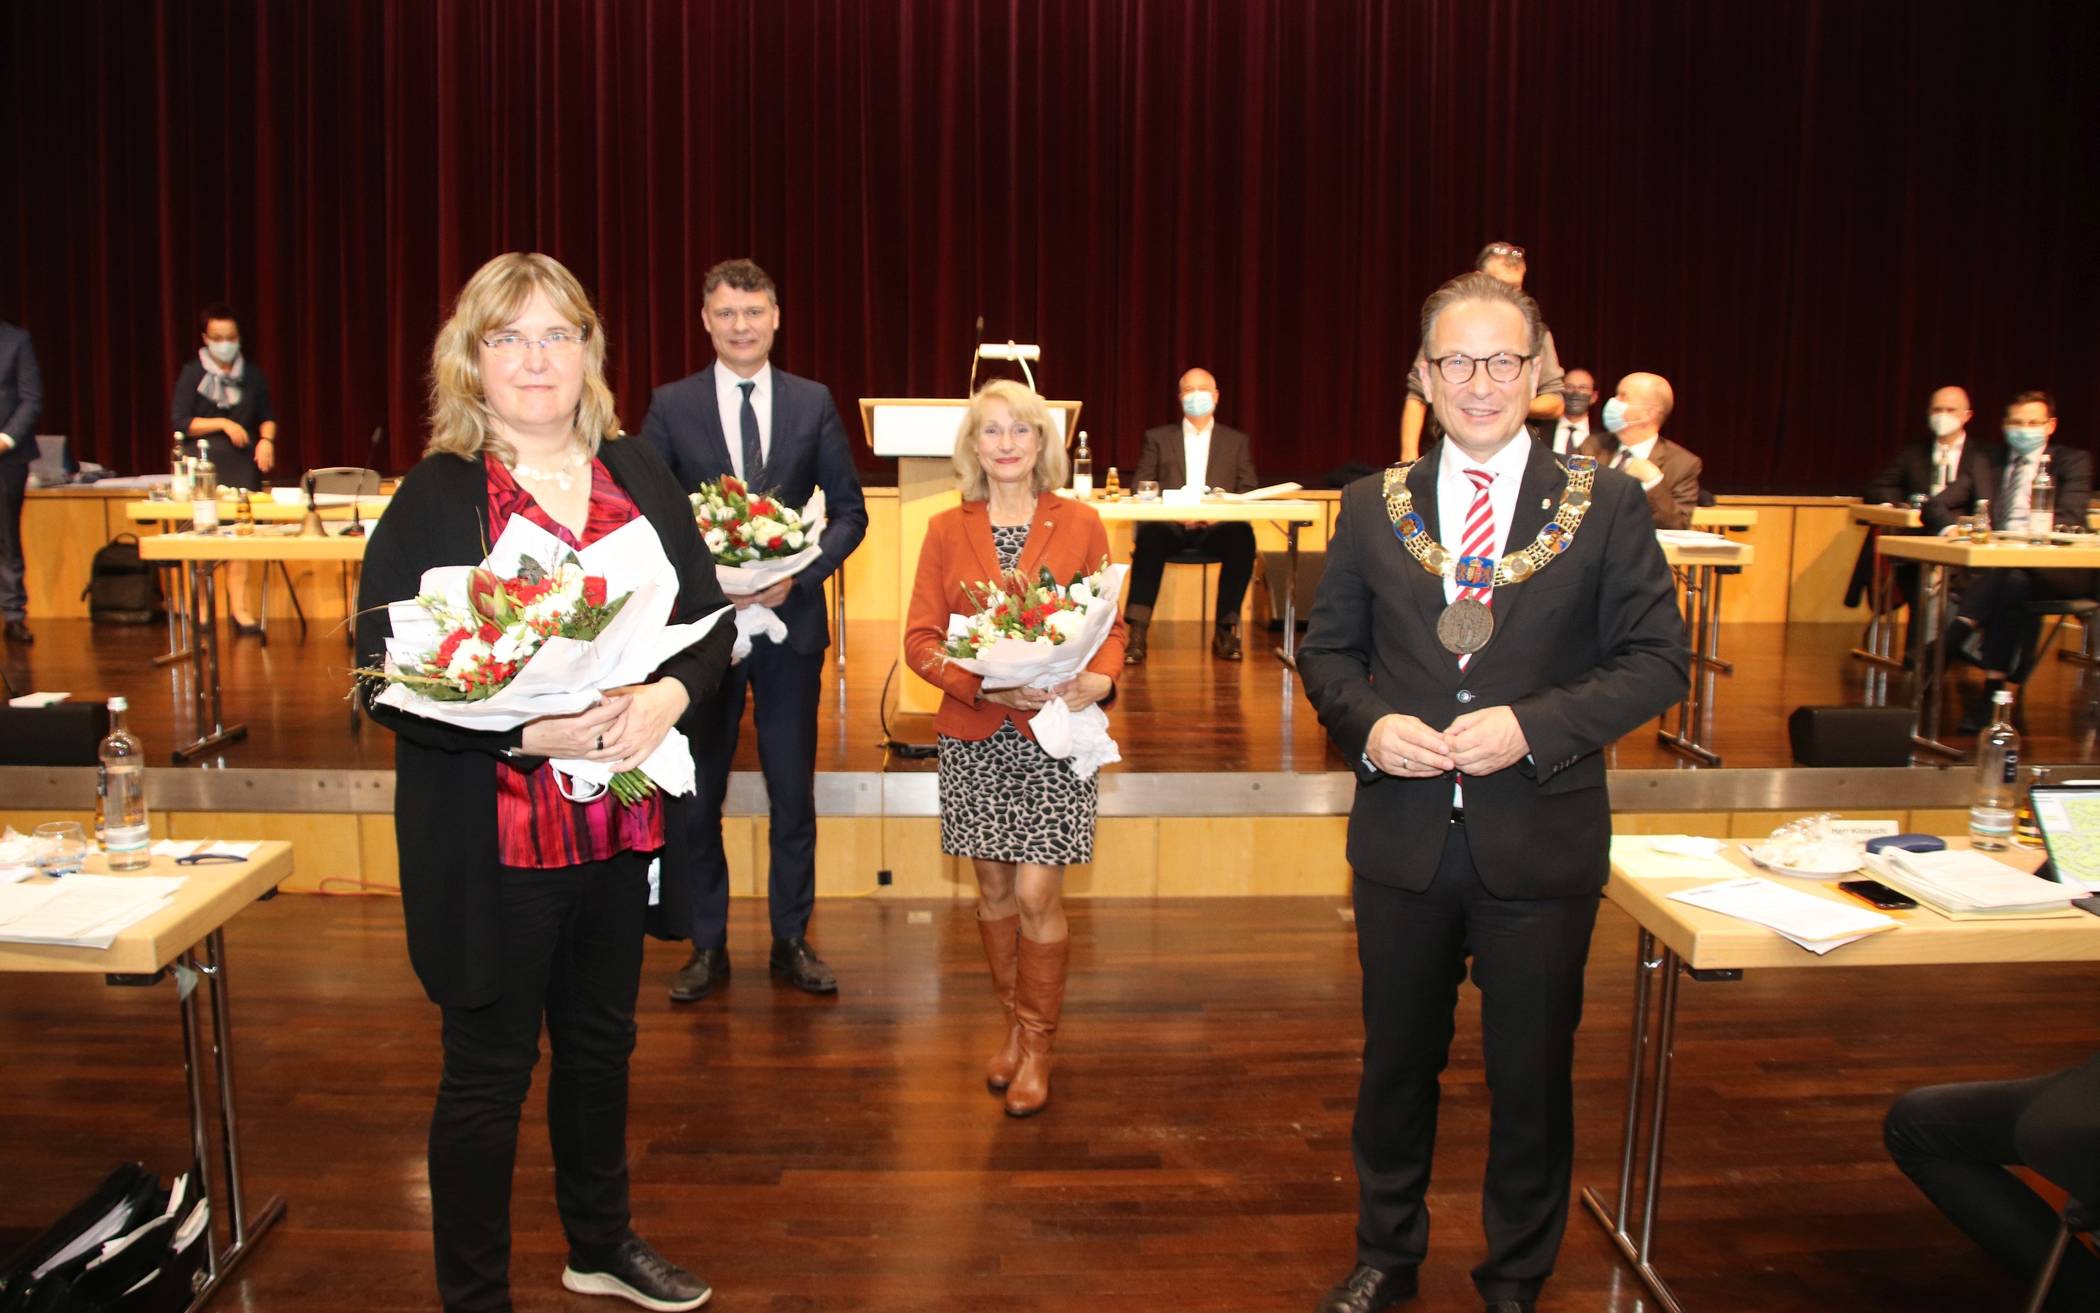  Bürgermeister Reiner Breuer (r.) und seine Stellvertreter (v.l.) Susanne Benary (Grüne), Dr. Jörg Geerlings (CDU) und Gisela Hohlmann (SPD). 